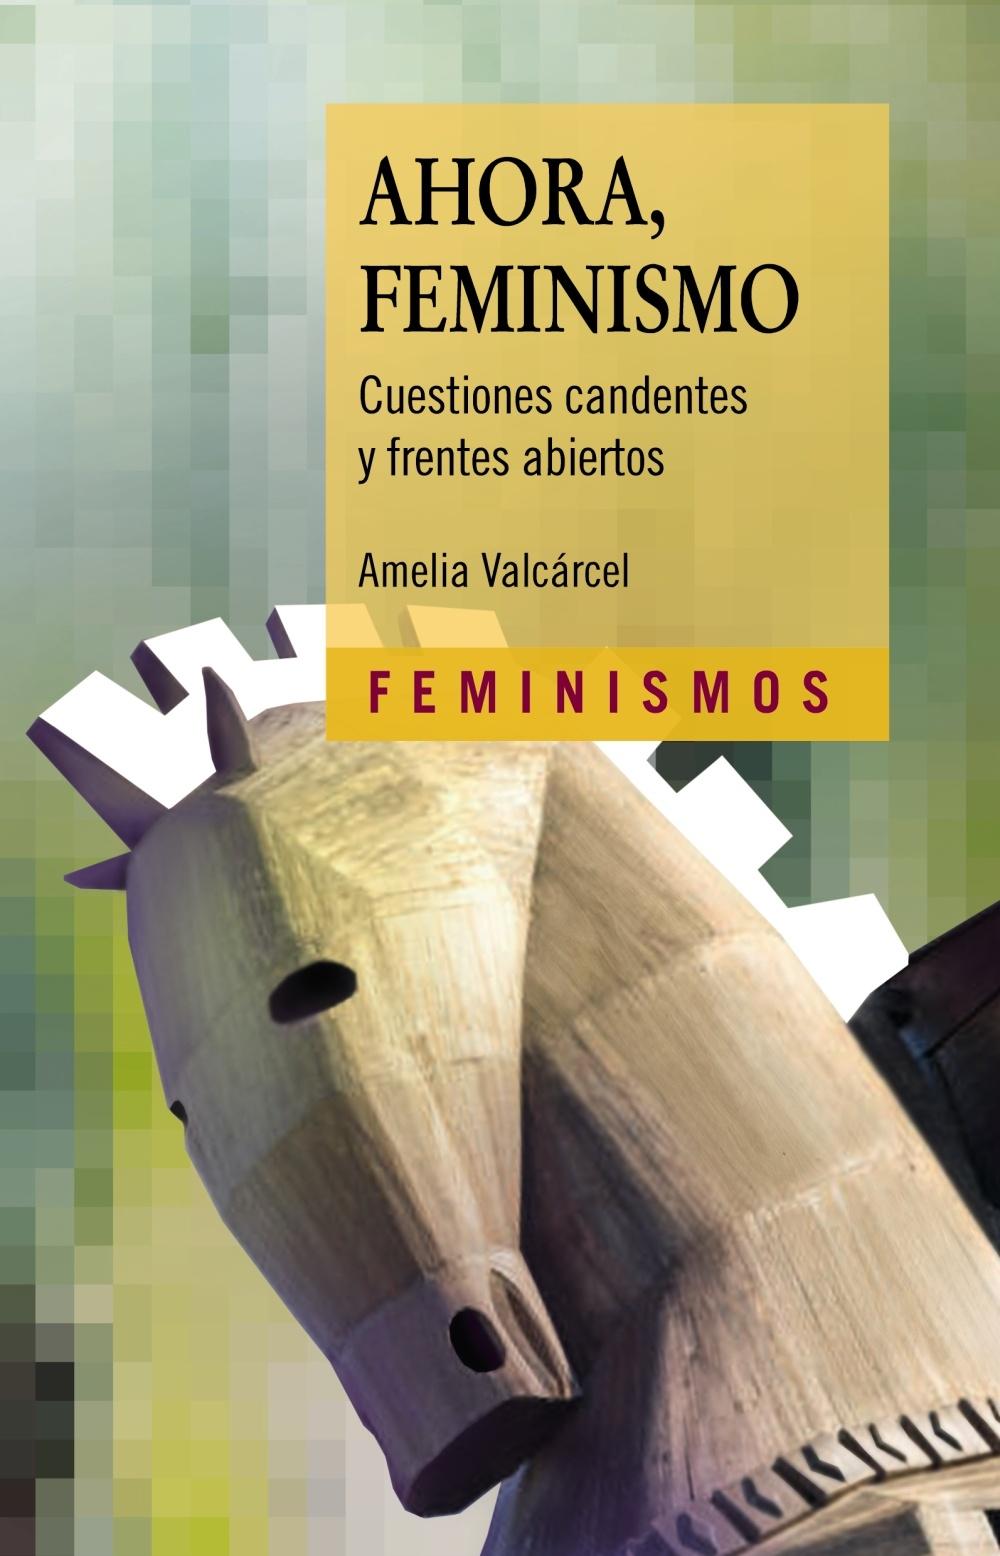 AHORA, FEMINISMO "CUESTIONES CANDENTES Y FRENTES ABIERTOS"